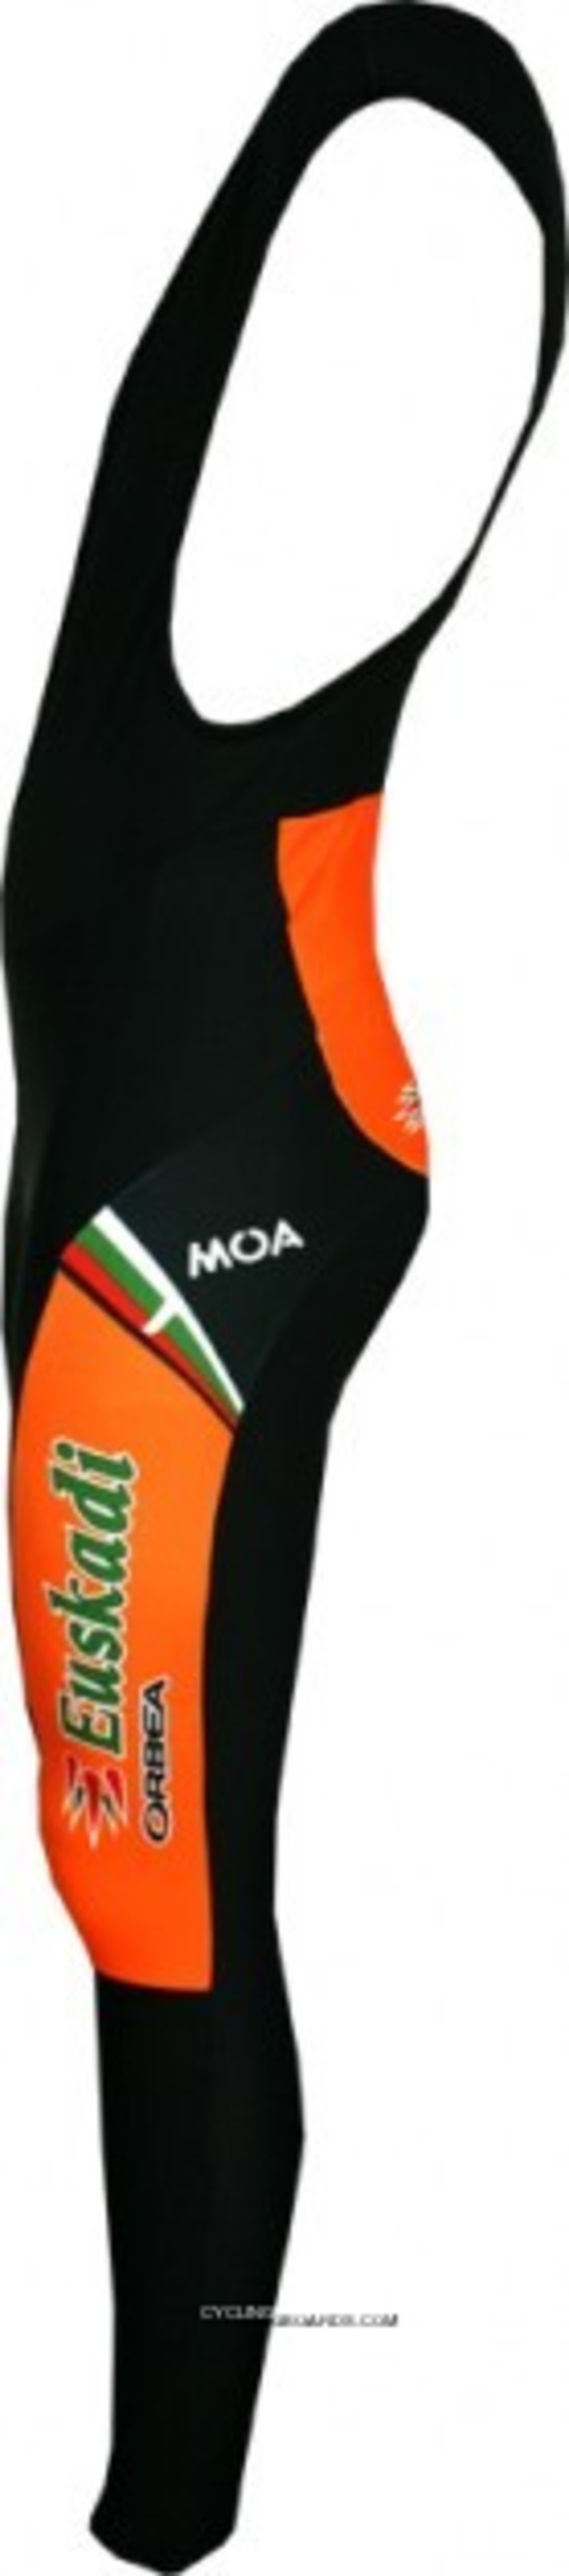 New Year Deals 2012 EUSKALTEL Euskadi MOA Radsport-Profi-Team Bib Tights TJ-488-0043